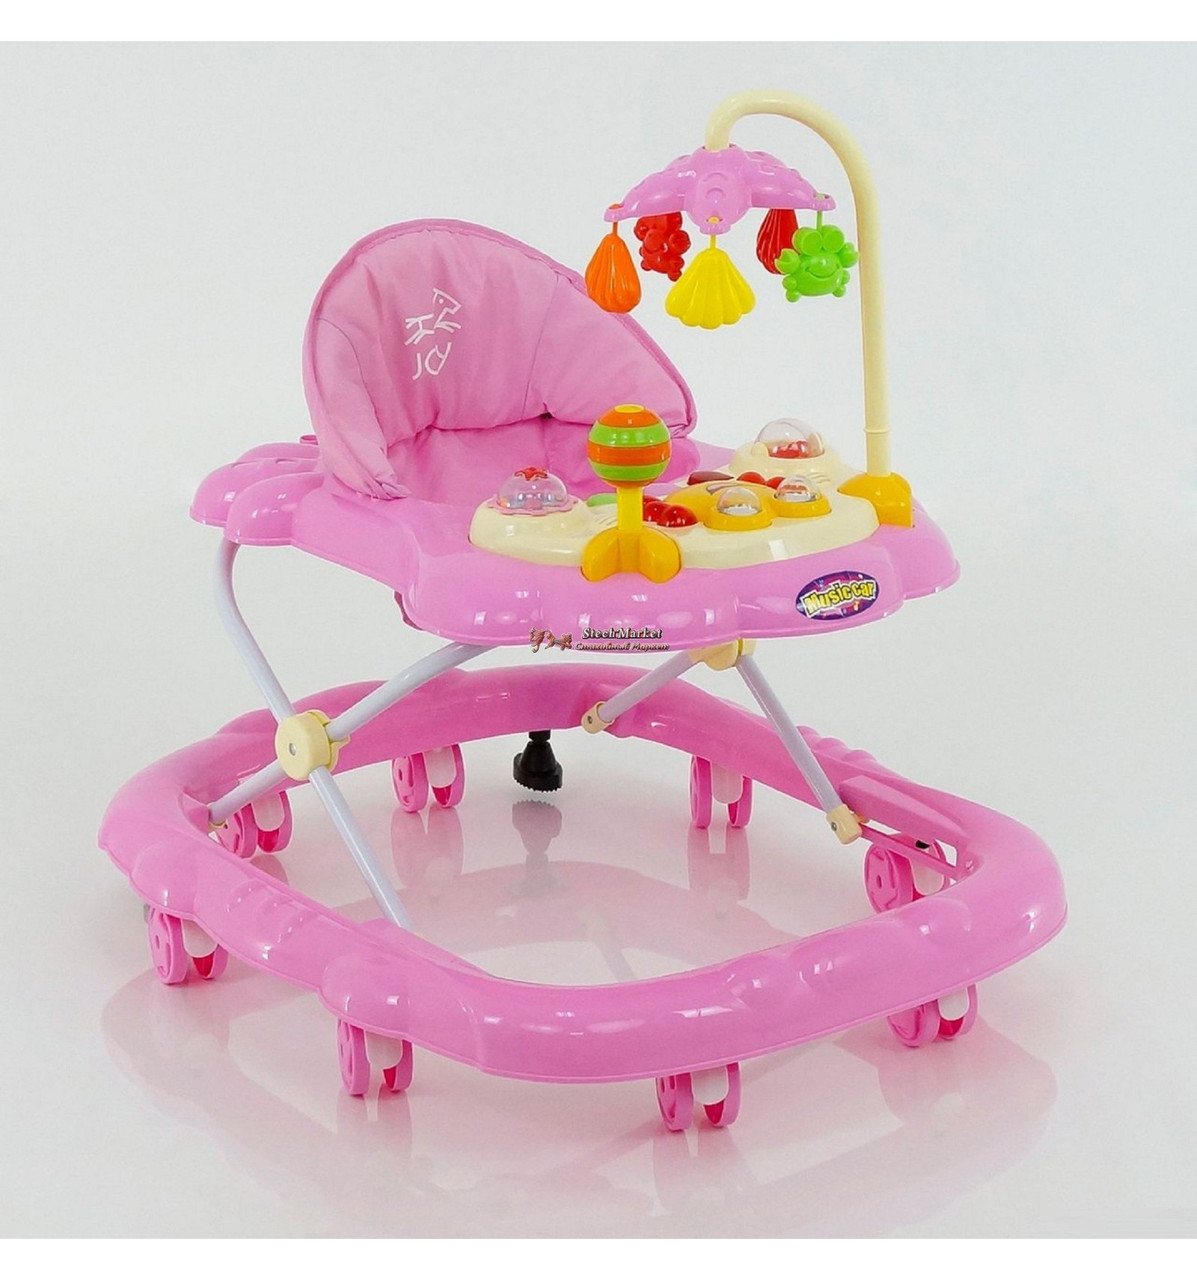 

Детские ходунки для малышей Joy D 28 c музыкой и подвесными игрушками Розовый